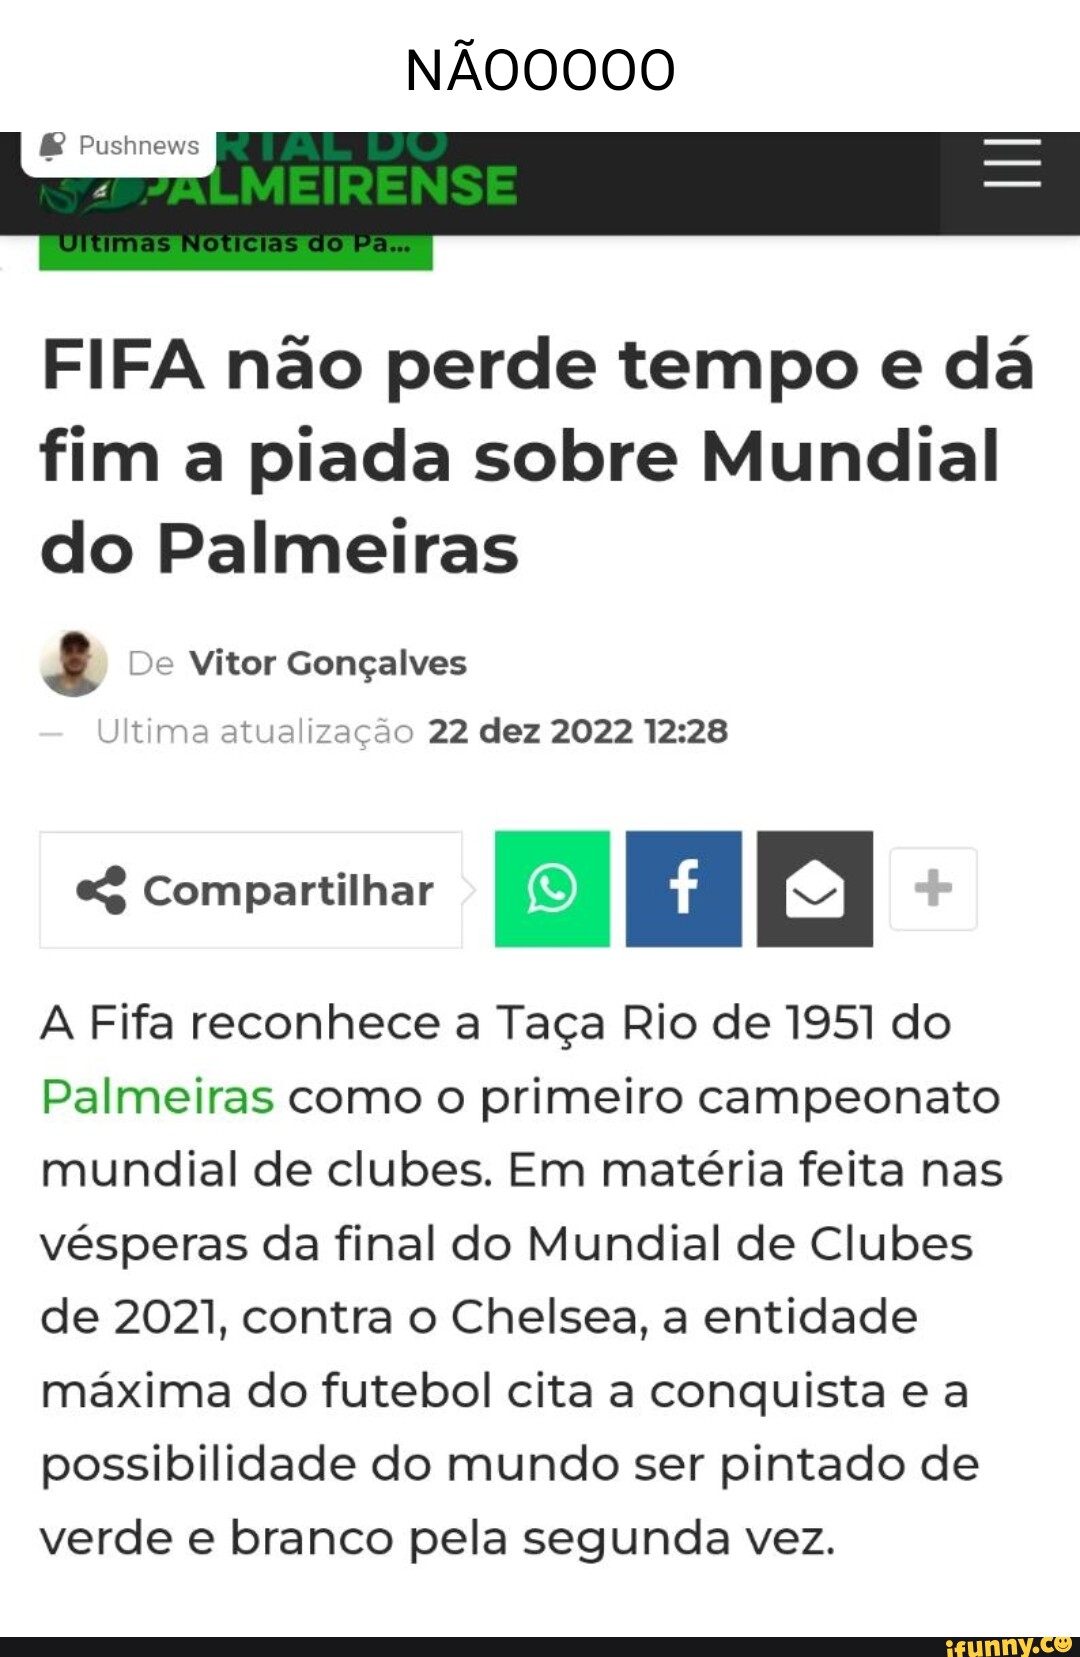 FIFA reconhece Palmeiras como o Primeiro Campeão Mundial de Clubes